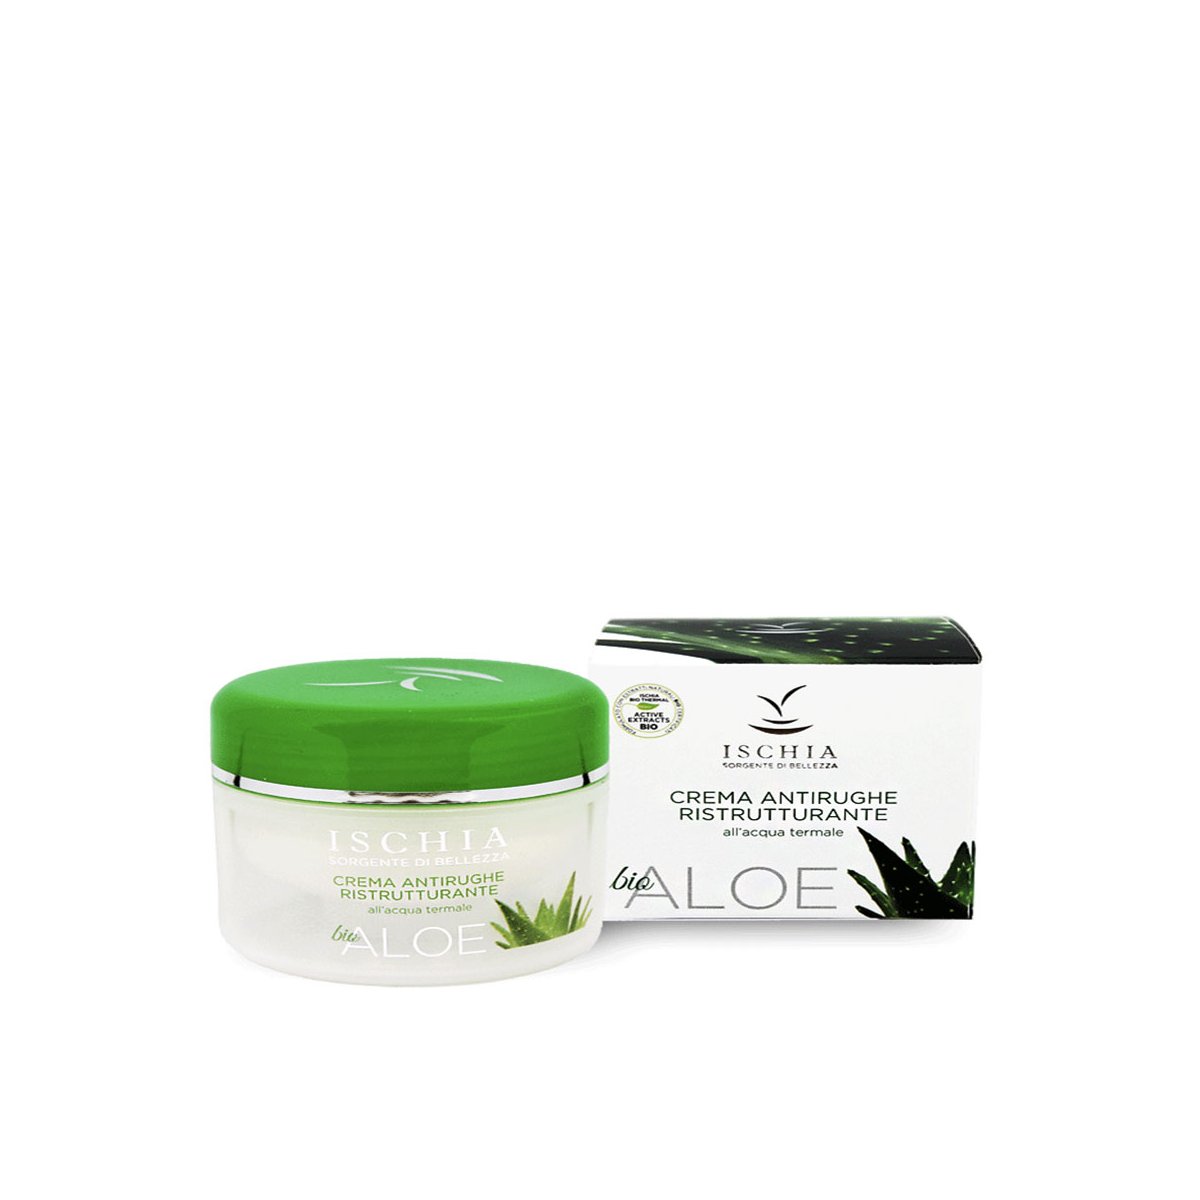 Crema antirughe ristrutturante Aloe 100 ml. - Ischia Sorgente di bellezza